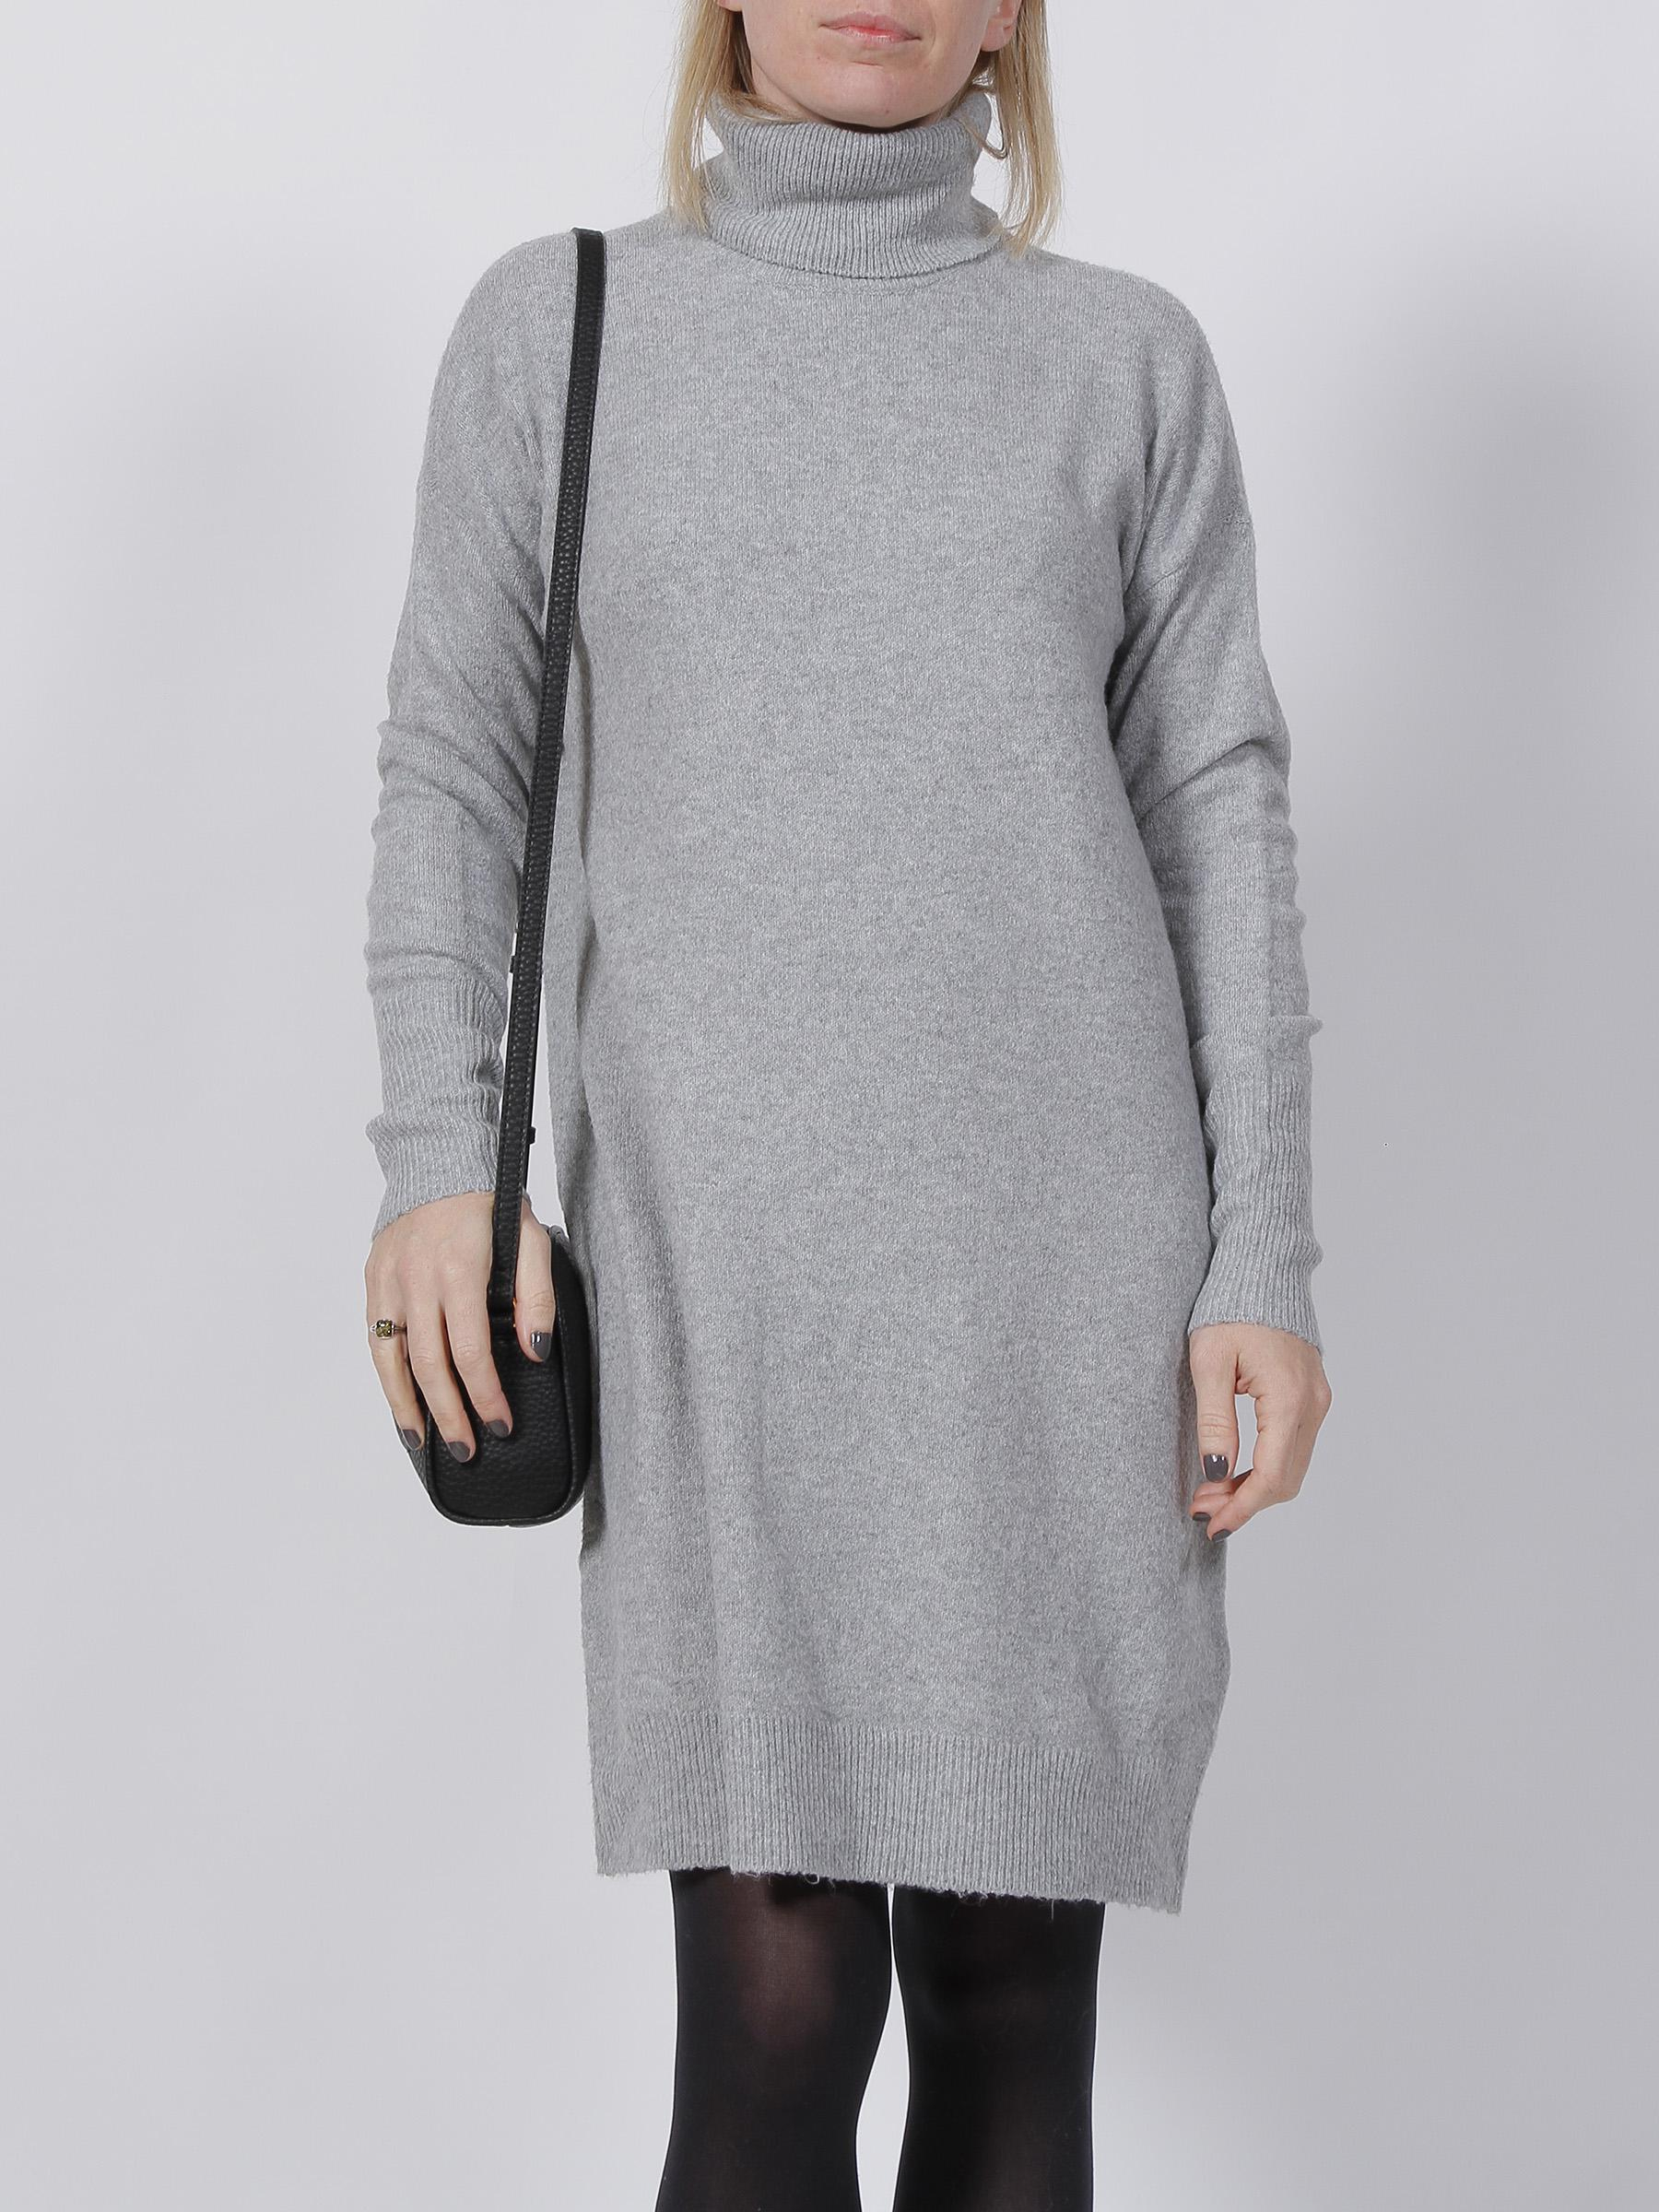 Robe pull brilliant gris femme - Vero Moda